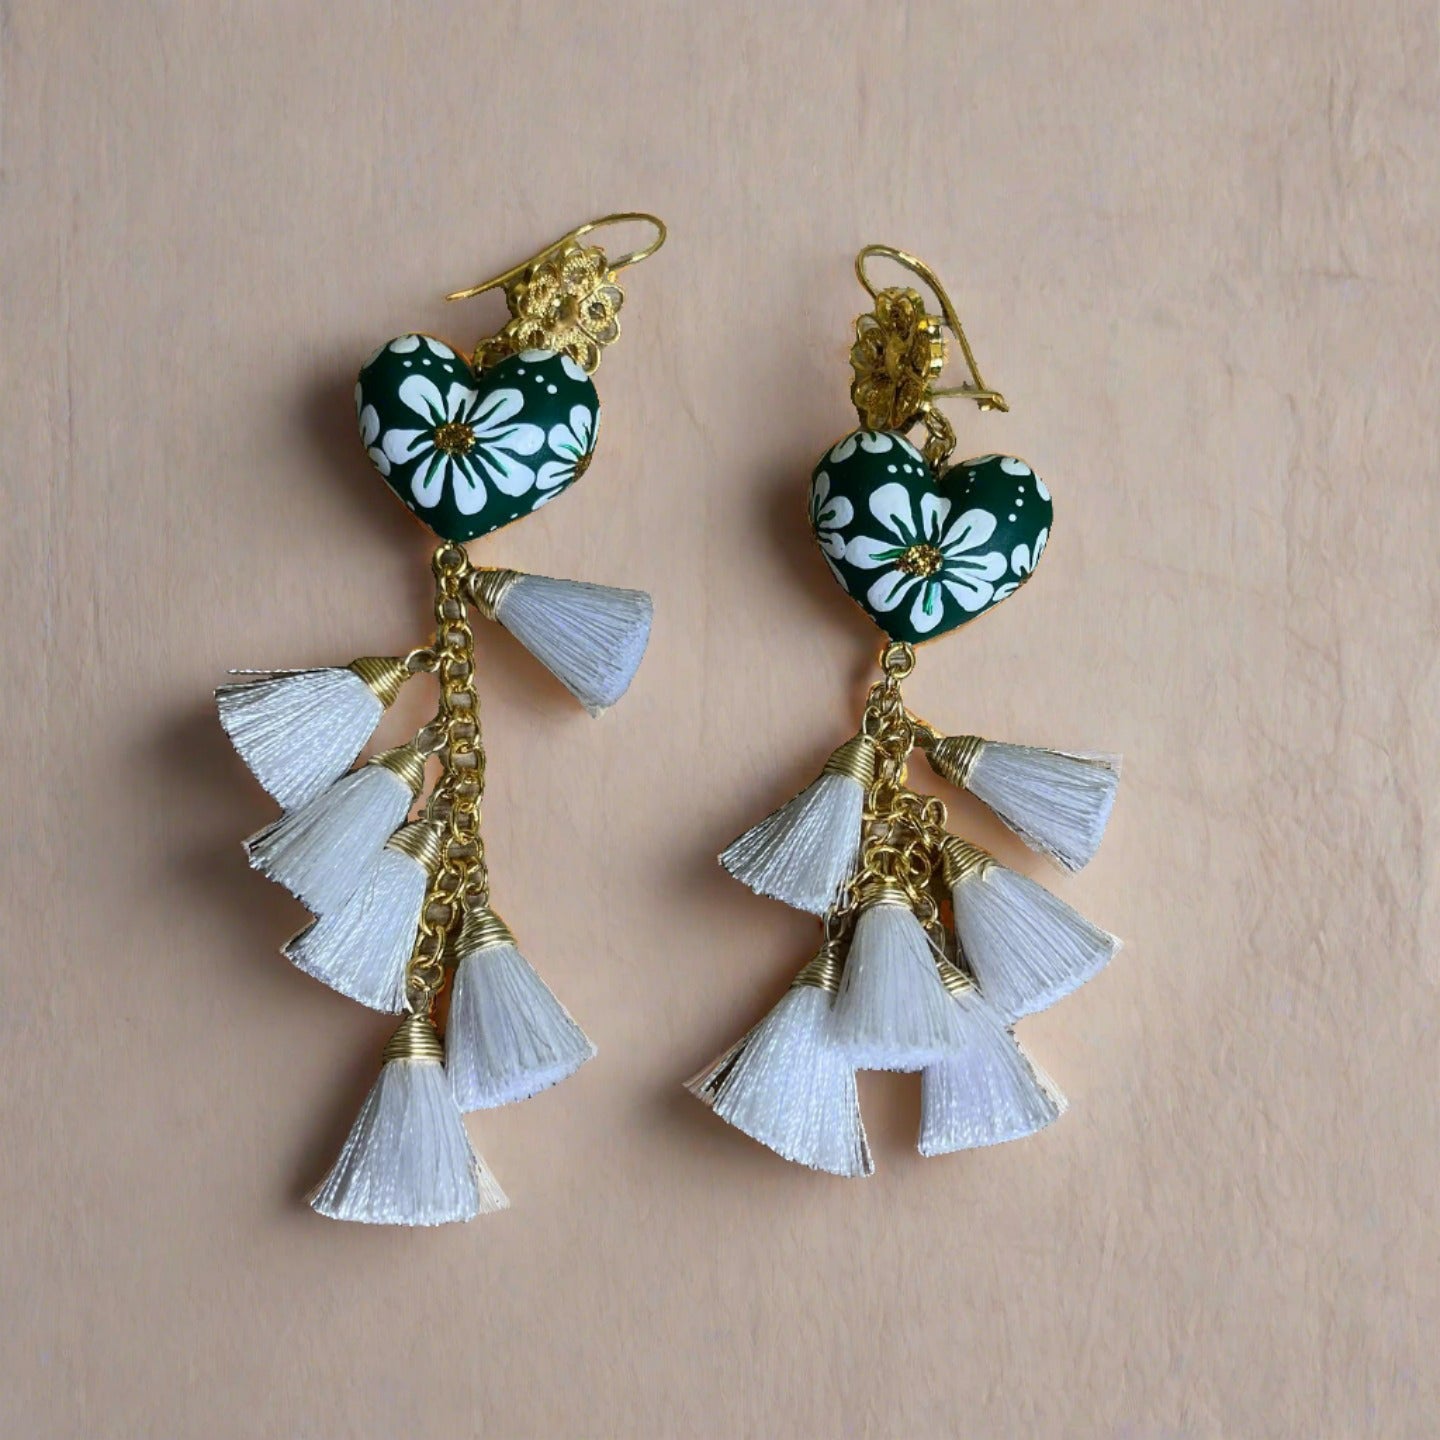 Handpainted Heart Tassel Earrings- Forest Green and White